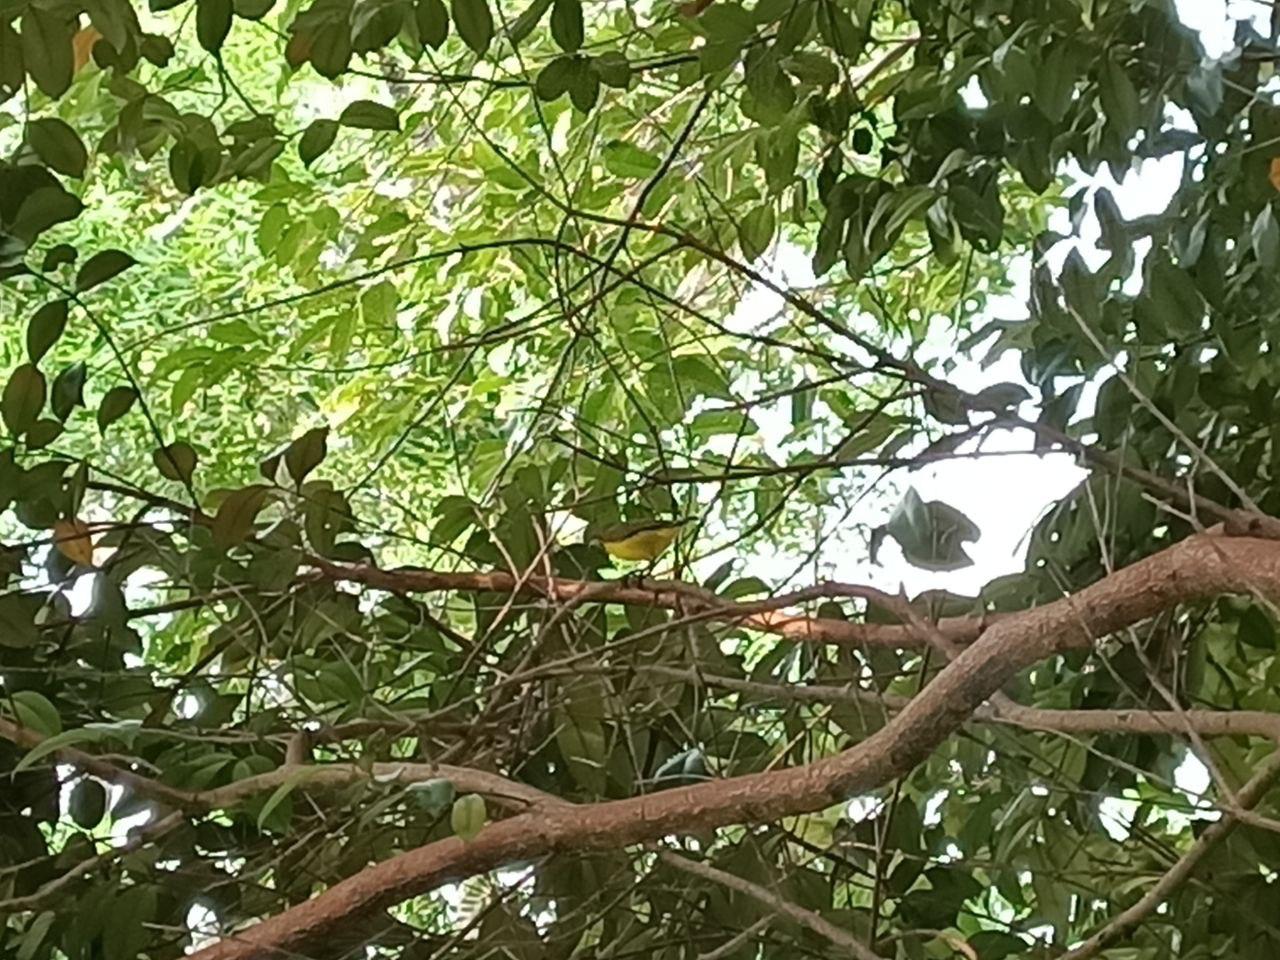 Olive-backed sunbird